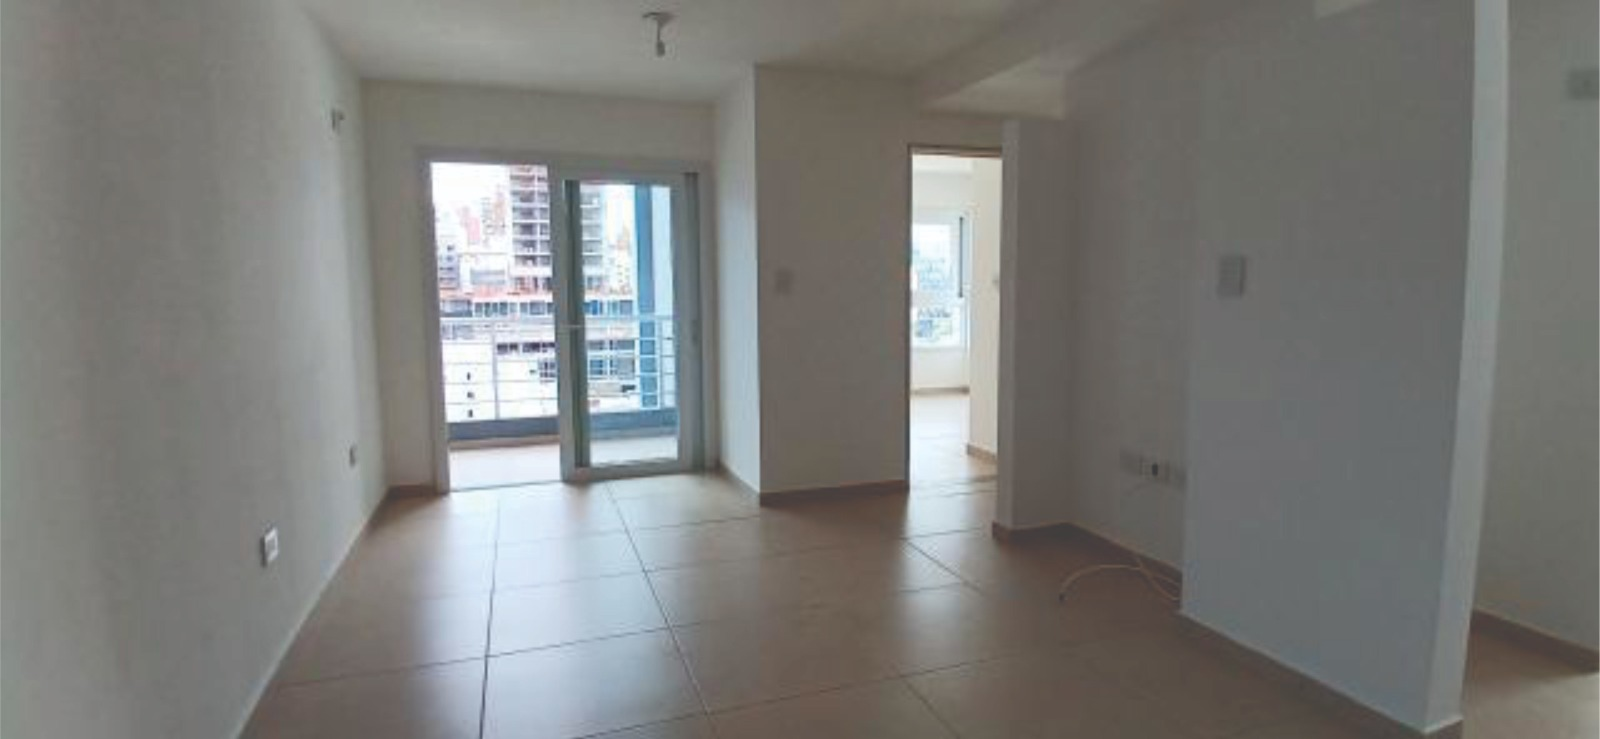 #5018156 | Rental | Apartment | Cordoba (Pisoalto REALTY)